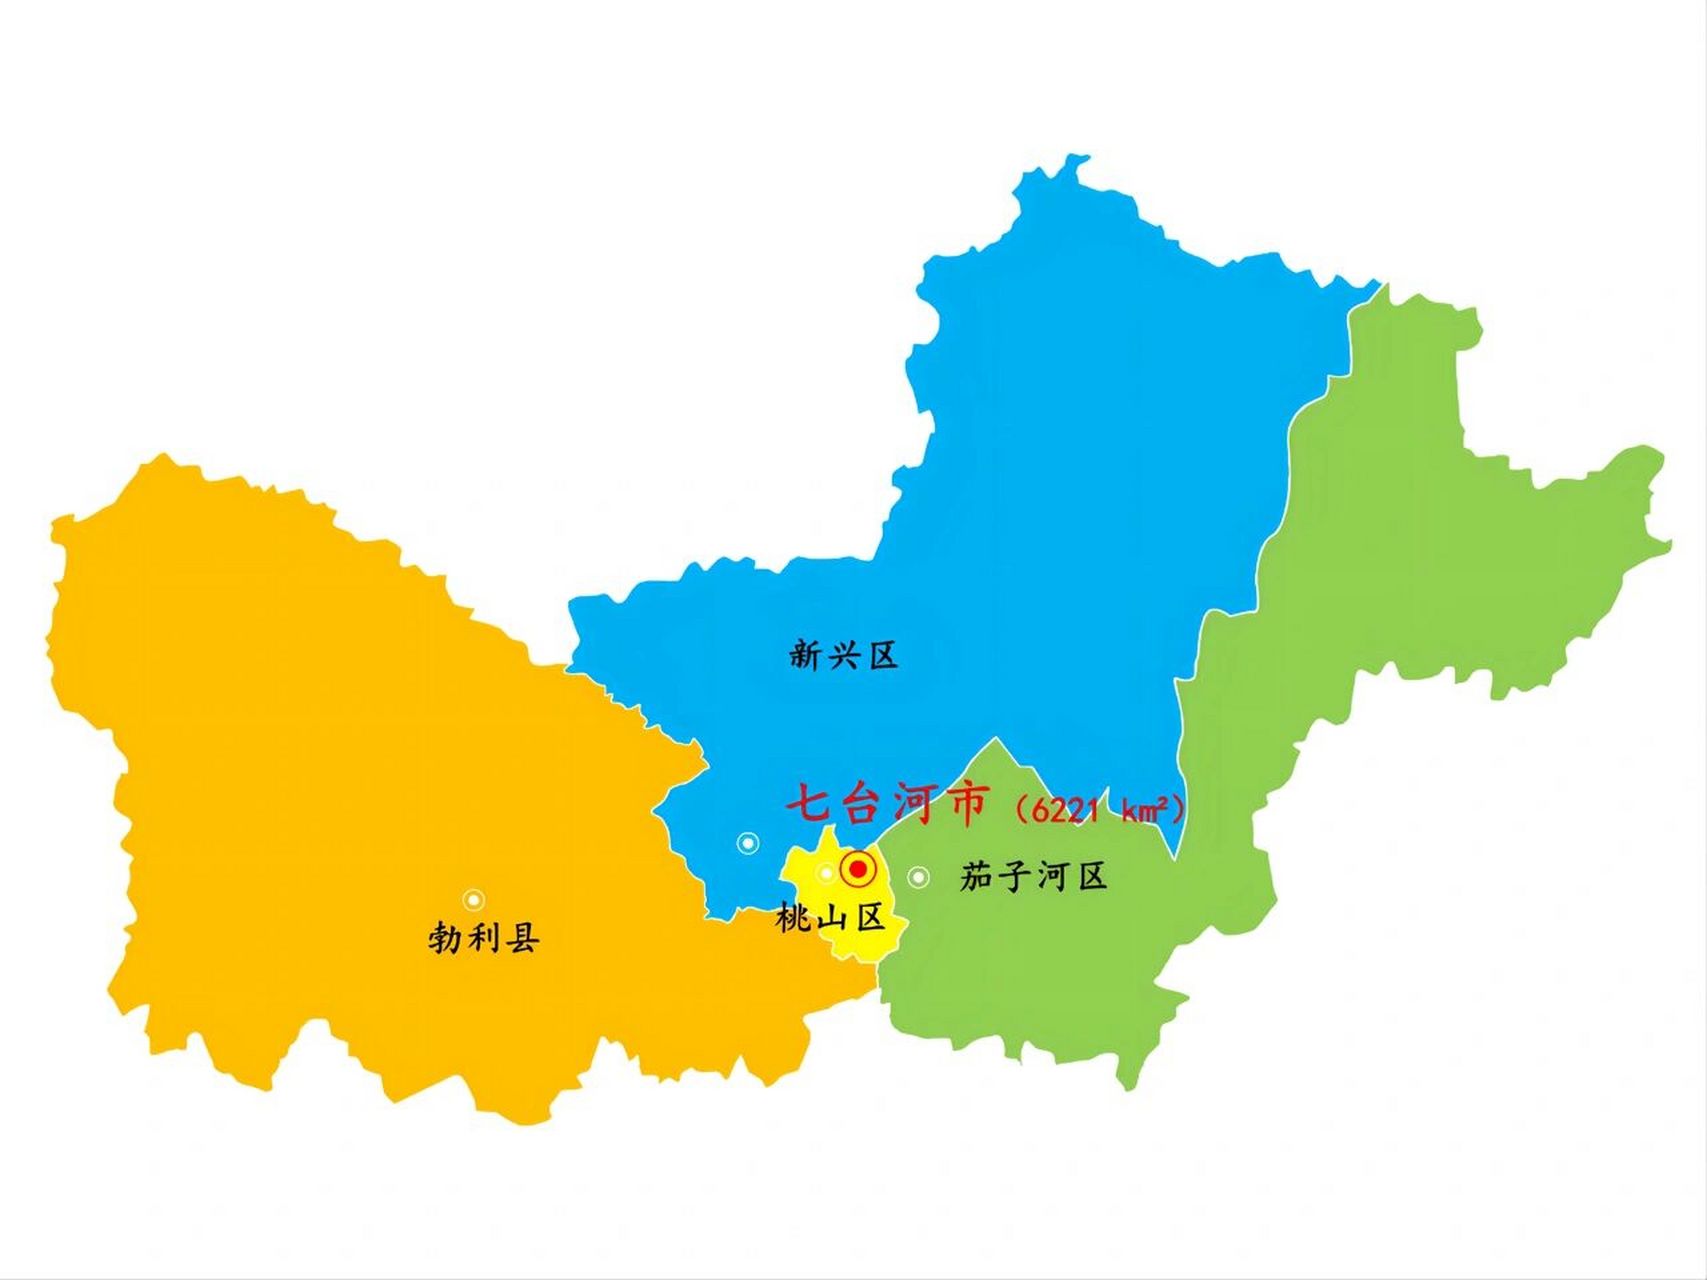 黑龙江·七台河市景区景点4个 下辖:3个市辖区:新兴区,桃山区,茄子河